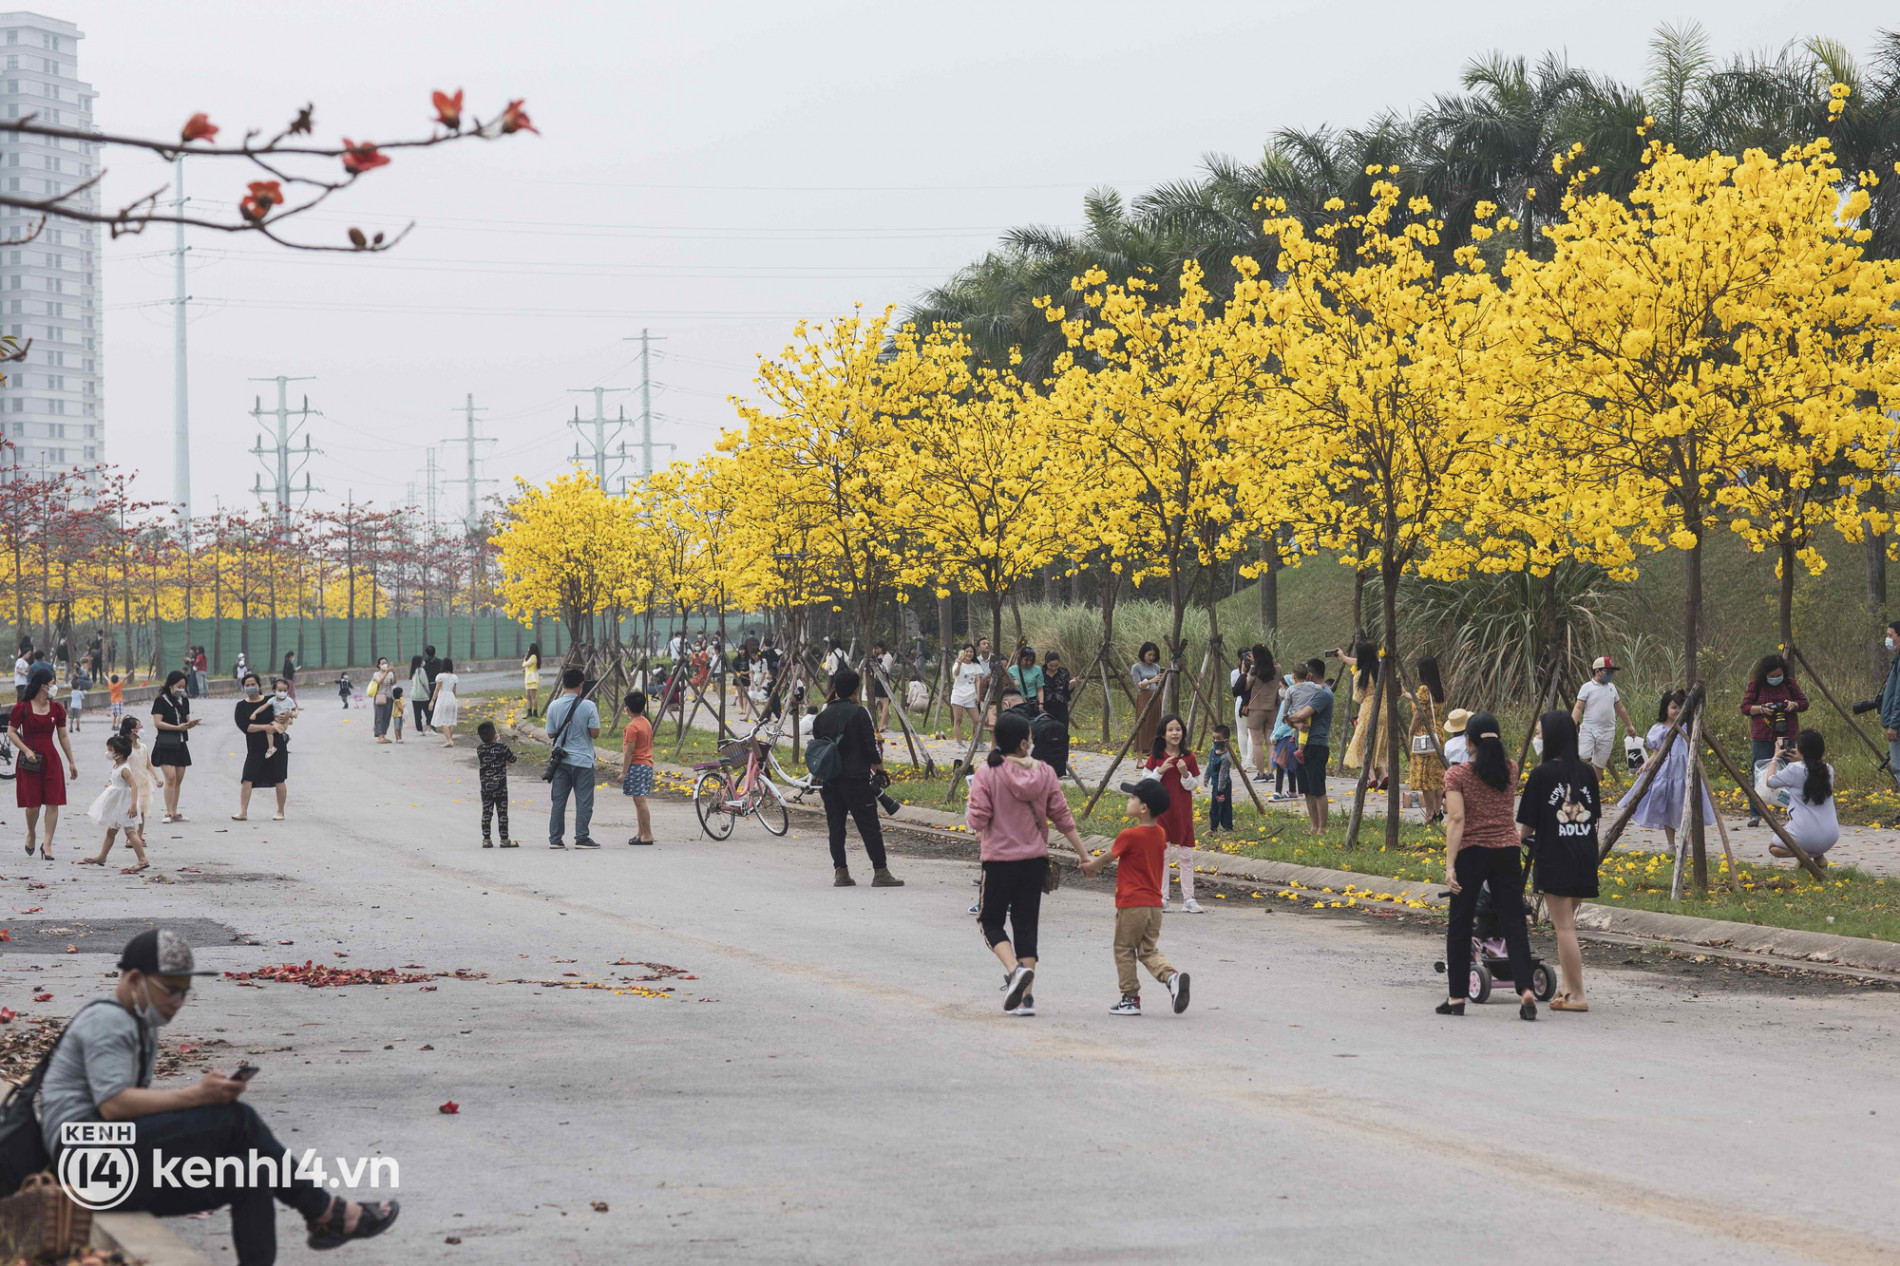 Con đường hoa vàng ở Hà Nội mới nổi 2 ngày đã đông nghịt người kéo đến check-in, có cả ekip “sống ảo” hùng hậu - Ảnh 5.